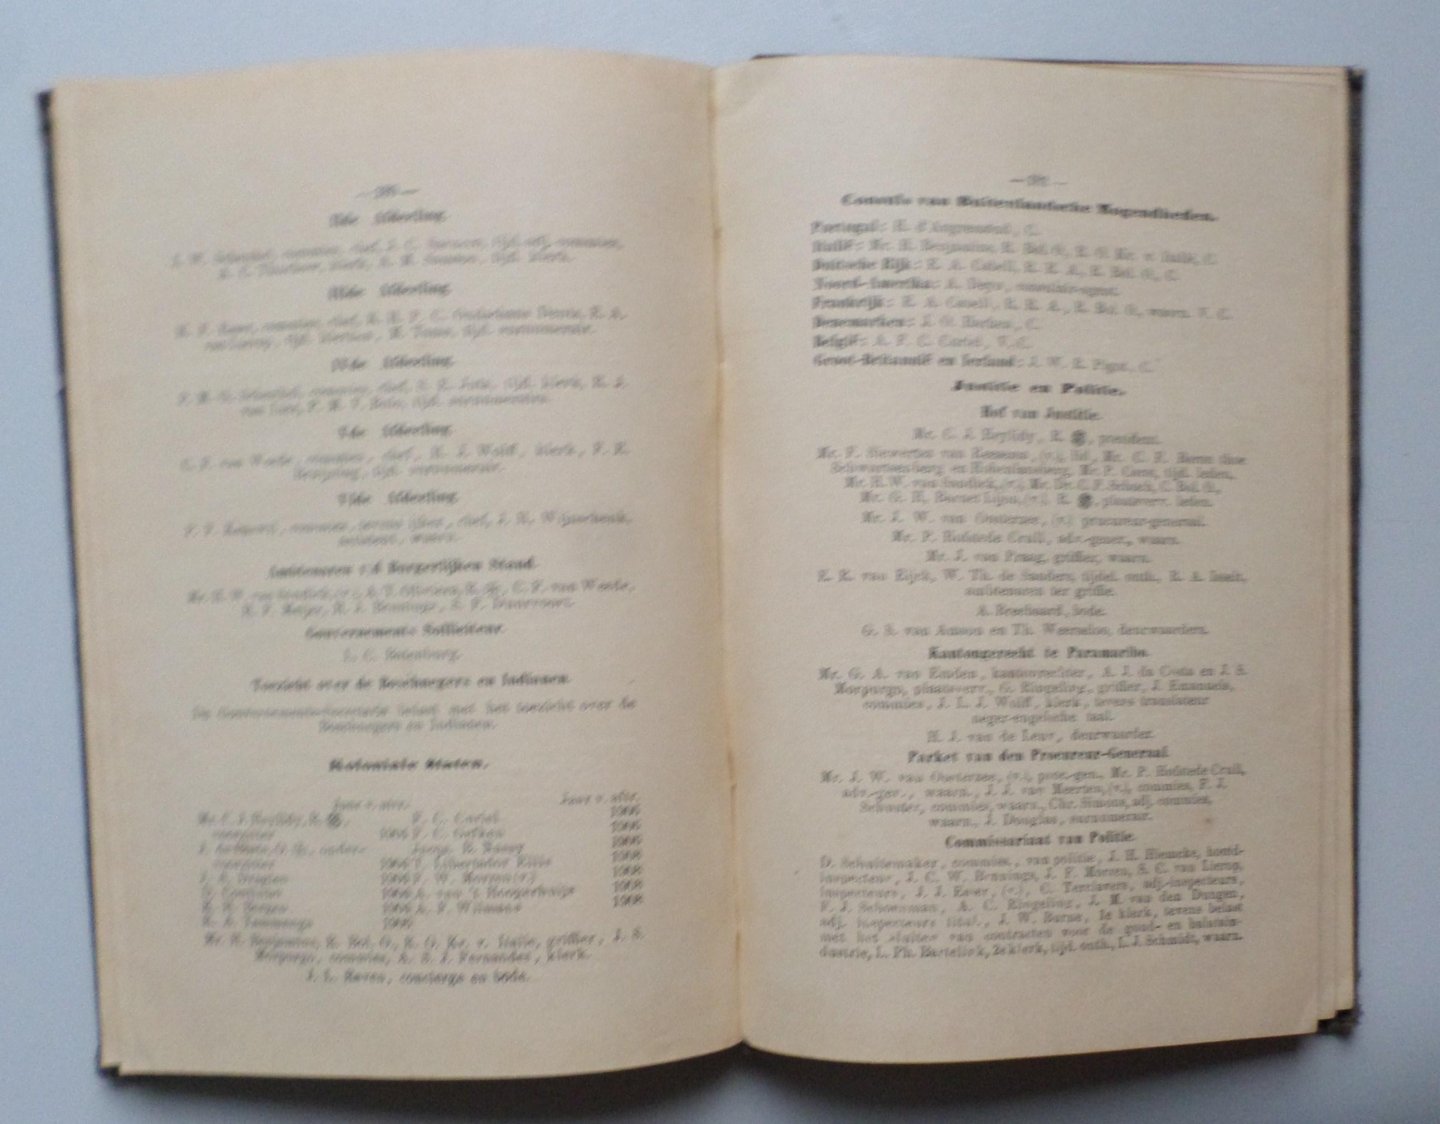 Morpurgo, E. J. - Surinaamsche Almanak voor het Jaar 1904